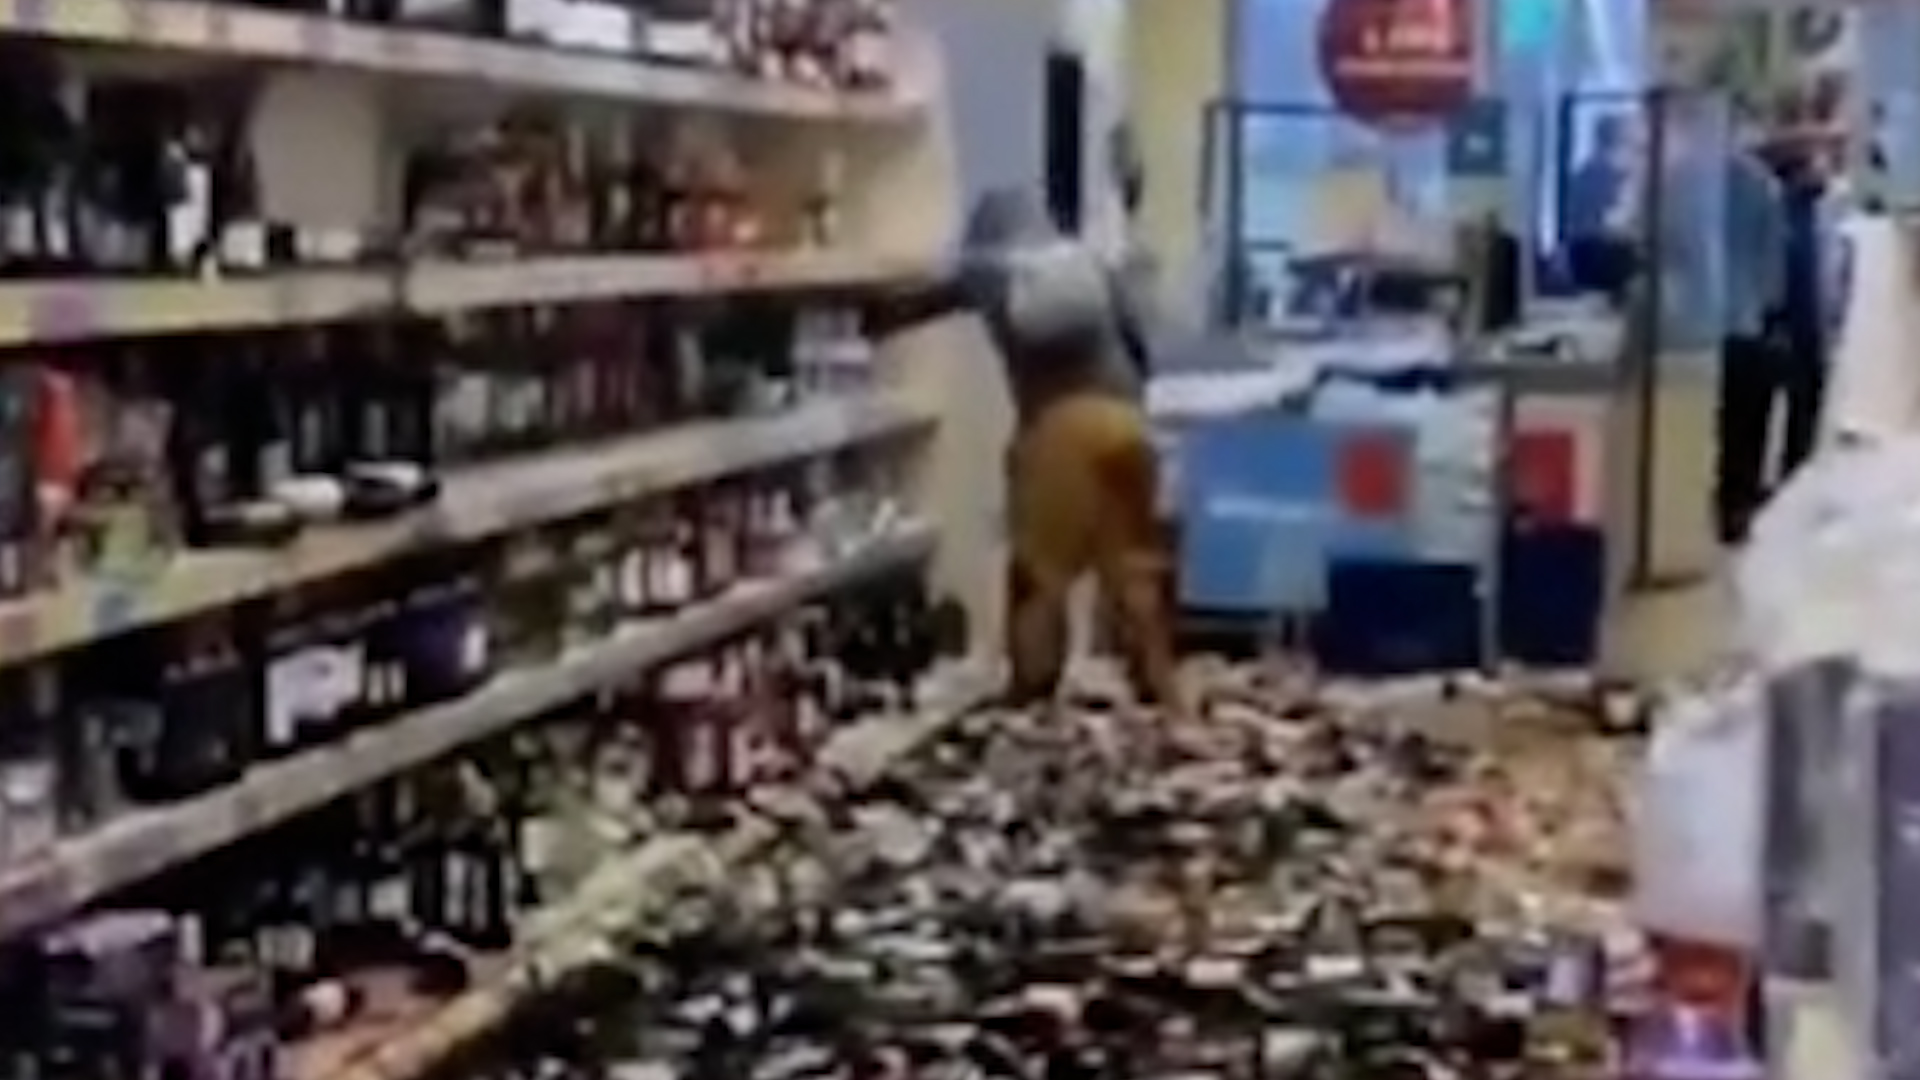  Barbara Stange-Alvarez tirando al suelo cientos de botellas de alcohol en el supermercado